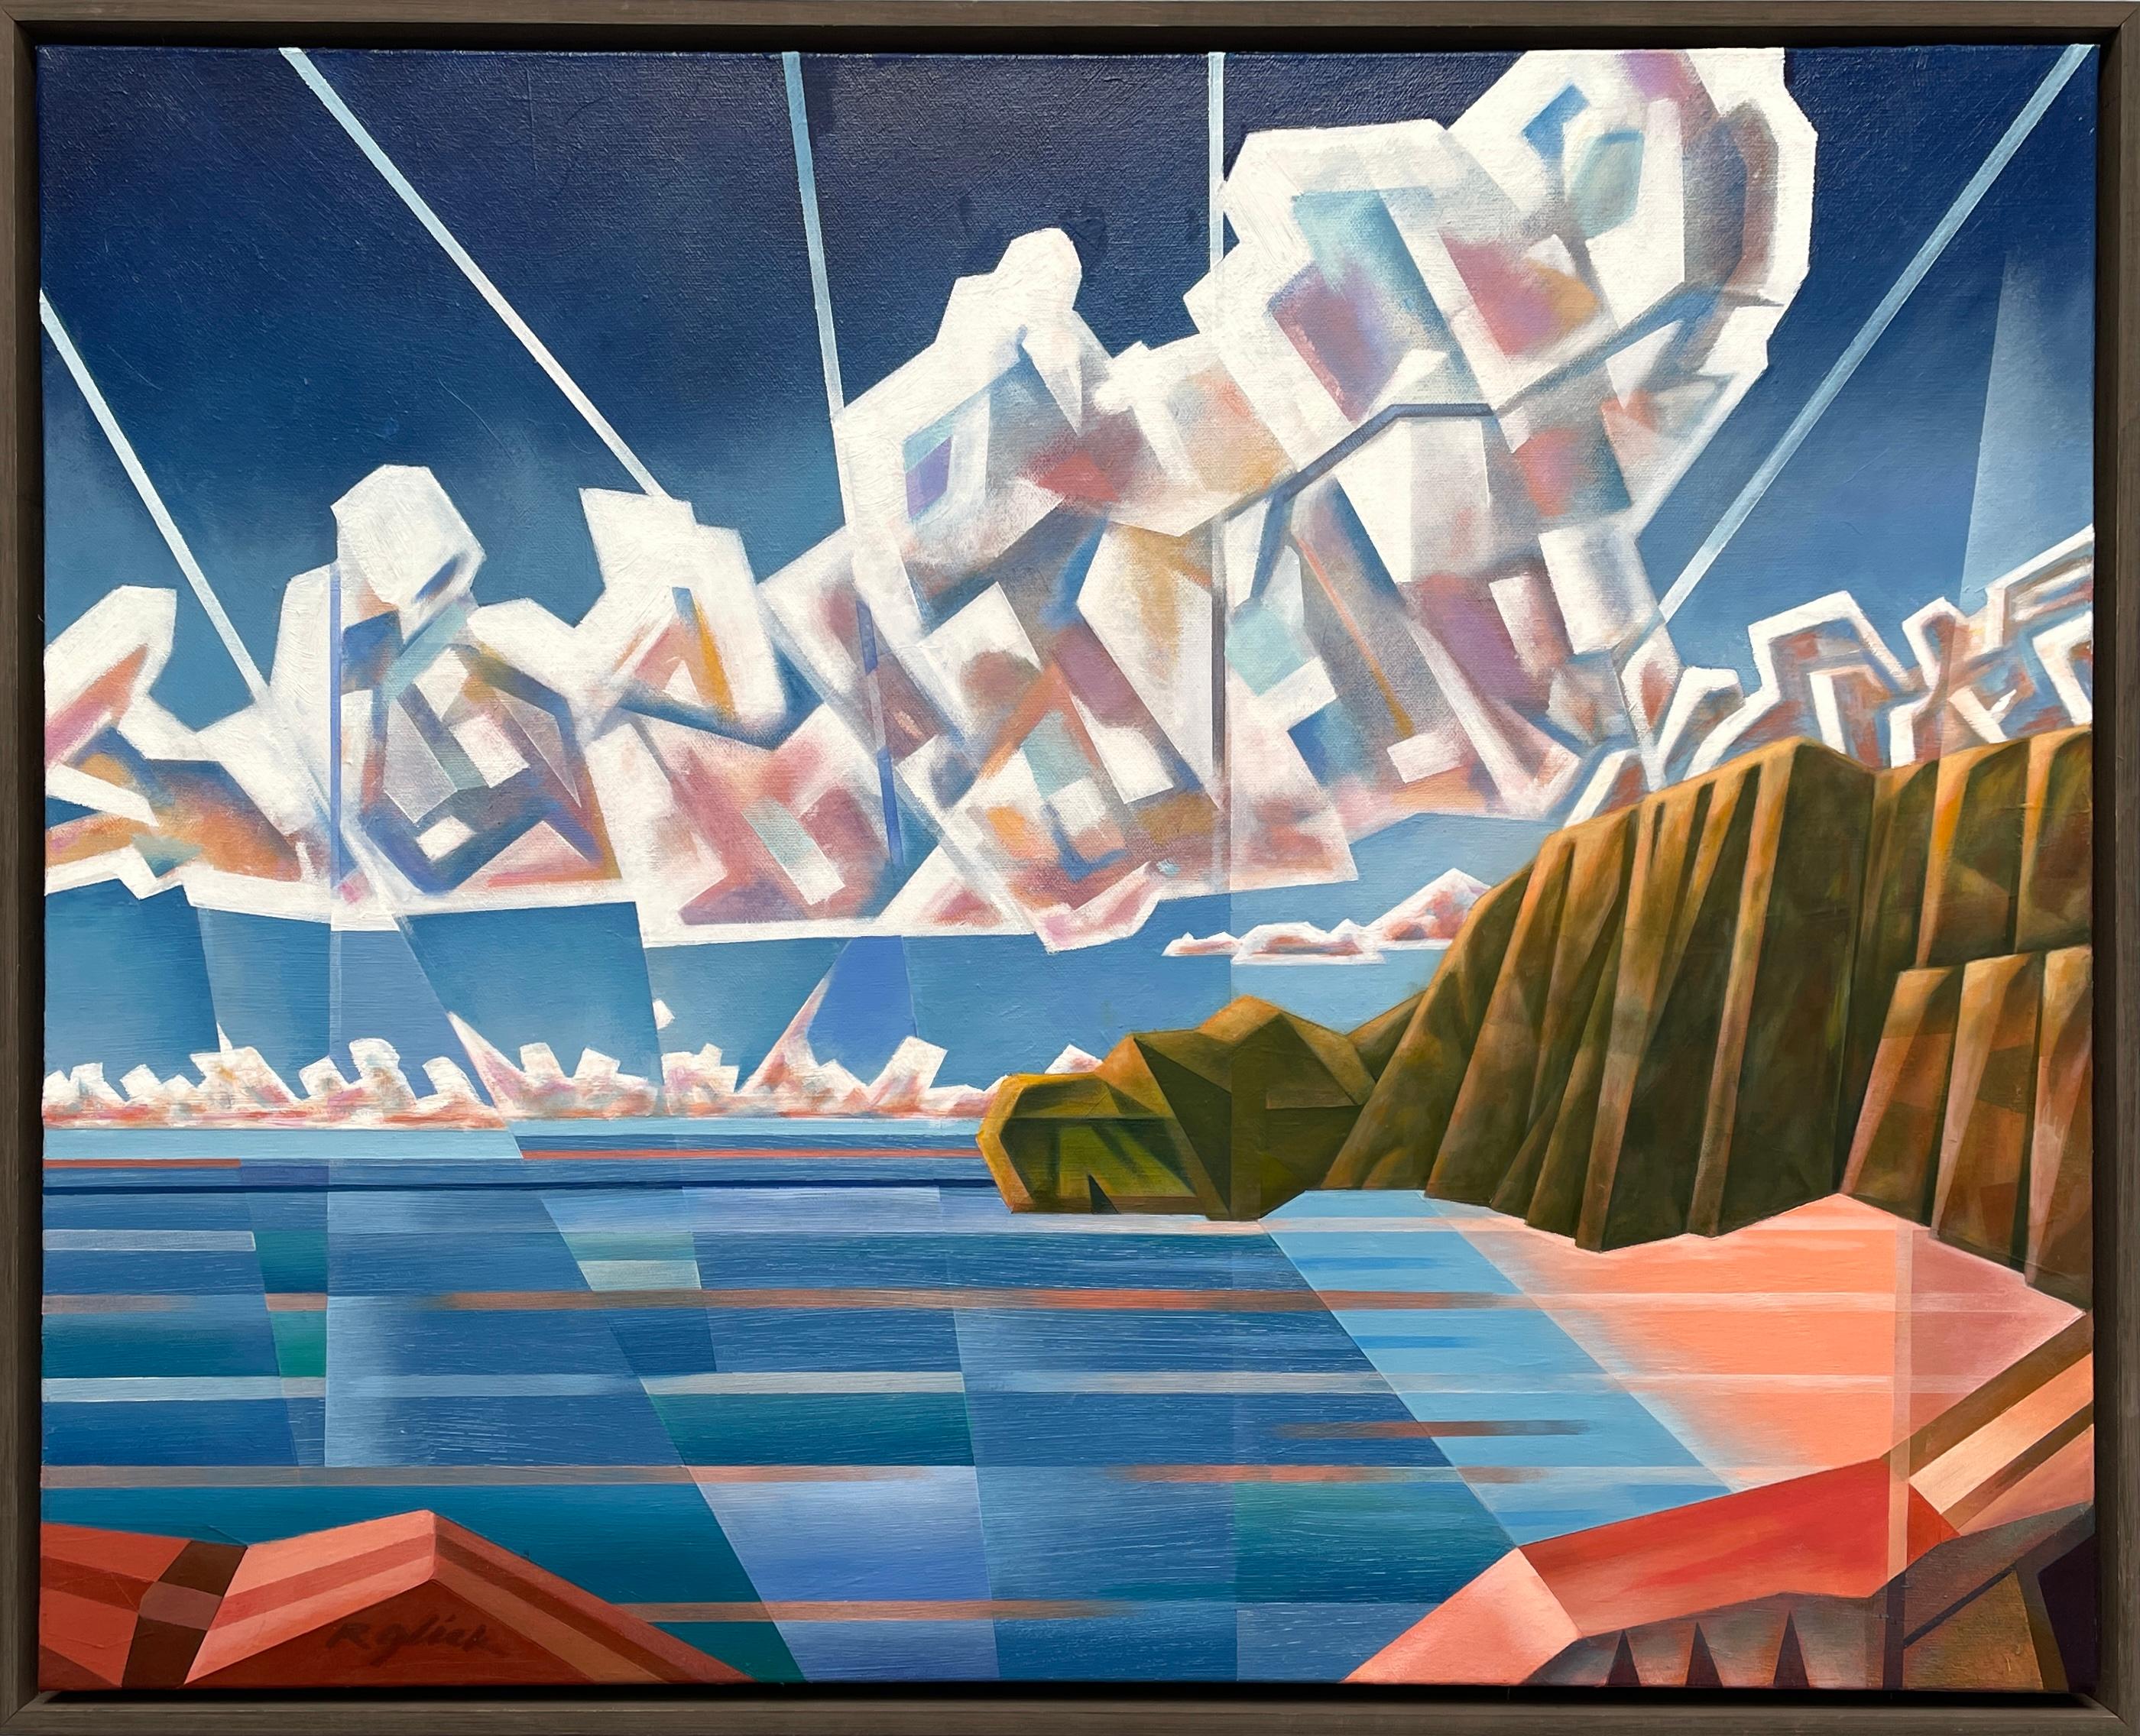 Holiday Cove" de Robert Glick es un cautivador óleo sobre lienzo de 24" x 30" que ejemplifica los principios del cubismo analítico. Este paisaje marino abstracto está compuesto por una serie de formas geométricas fragmentadas que reconstruyen la